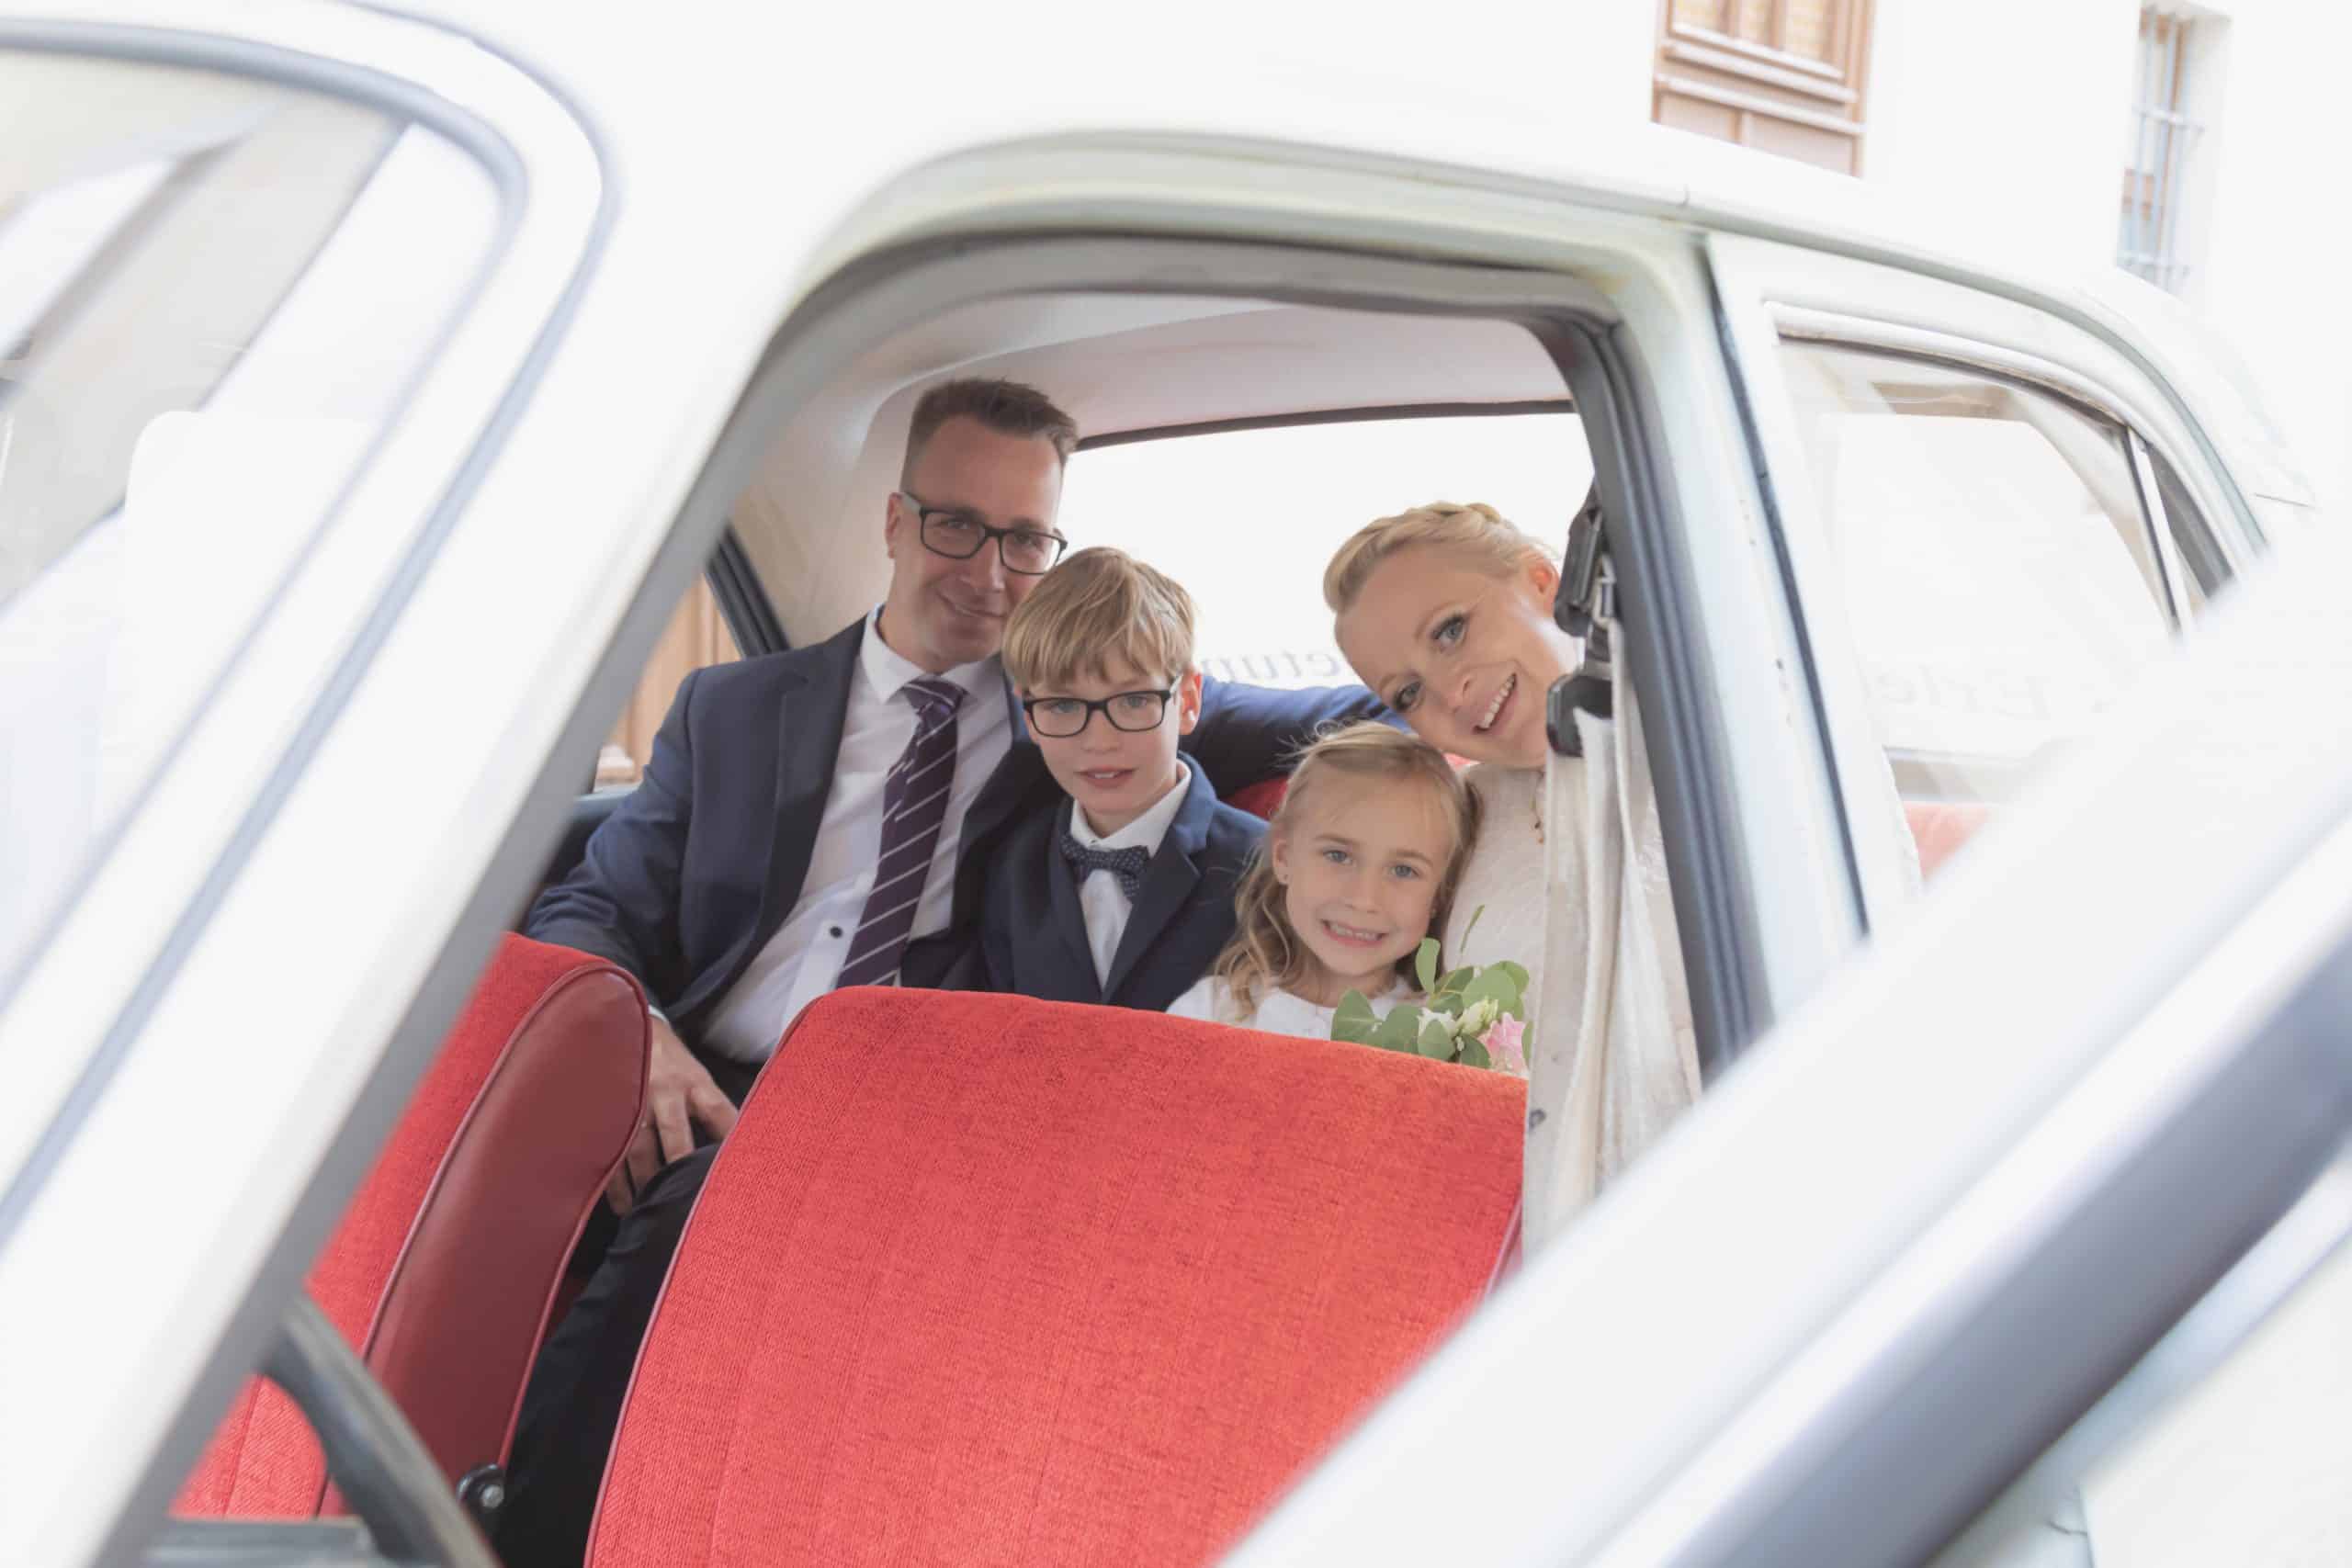 Jan Windisch, Fotograf und Hochzeitsfotograf aus Dresden, Prina, Görlitz, Großenhain und Leipzig, hat hier ein Brautpaar mit ihren zwei Kinder fotografiert. Sie sitzen alle vier im Auto und lächeln in die Kamera.